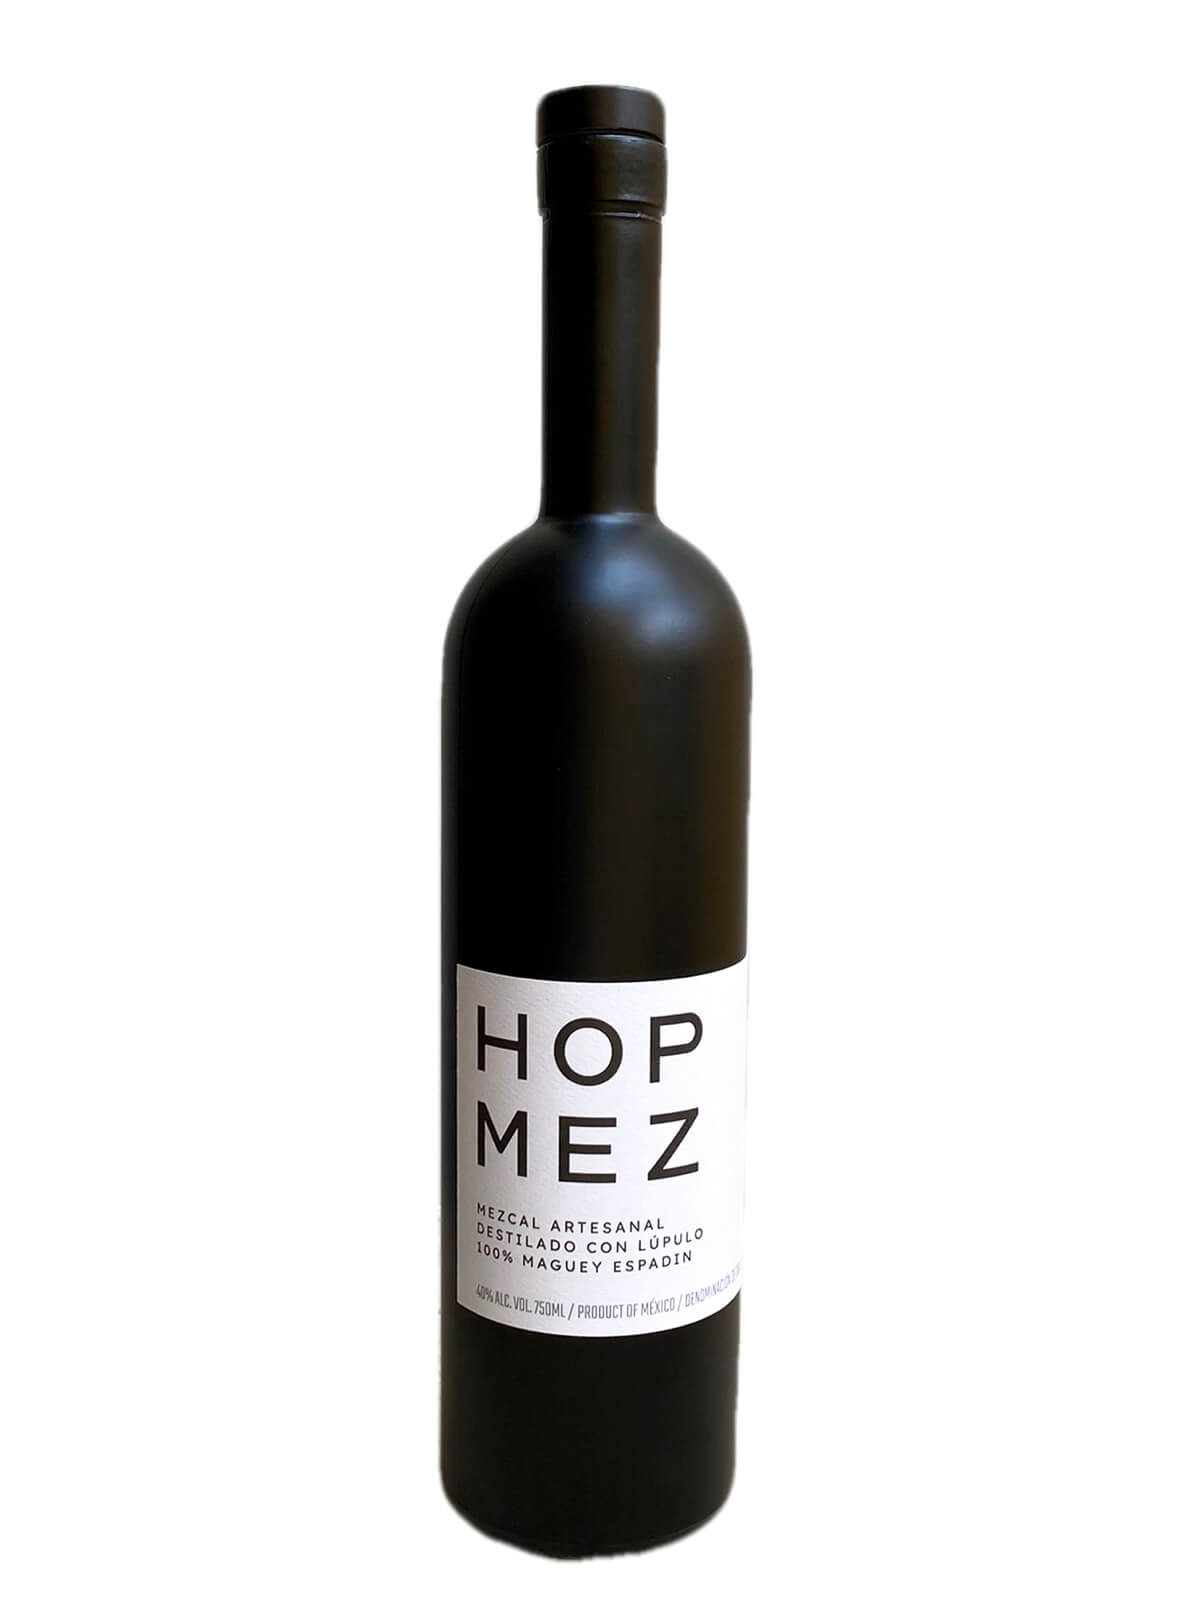 Hop Mez mezcal bottle